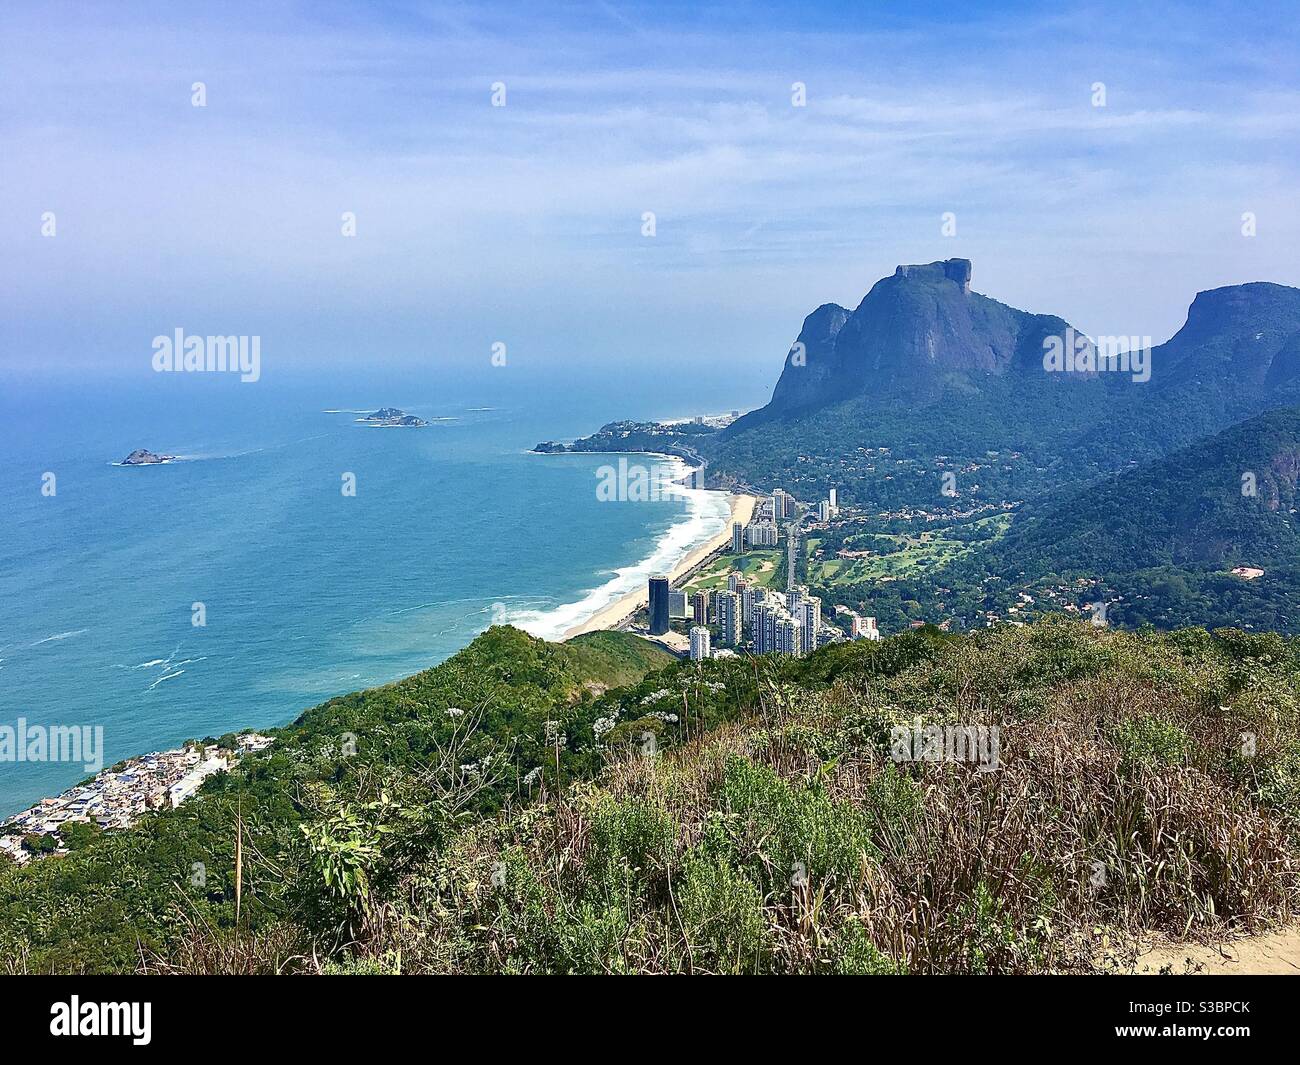 View from right side of Morro dois irmãos, Rio de Janeiro, Brazil. Stock Photo